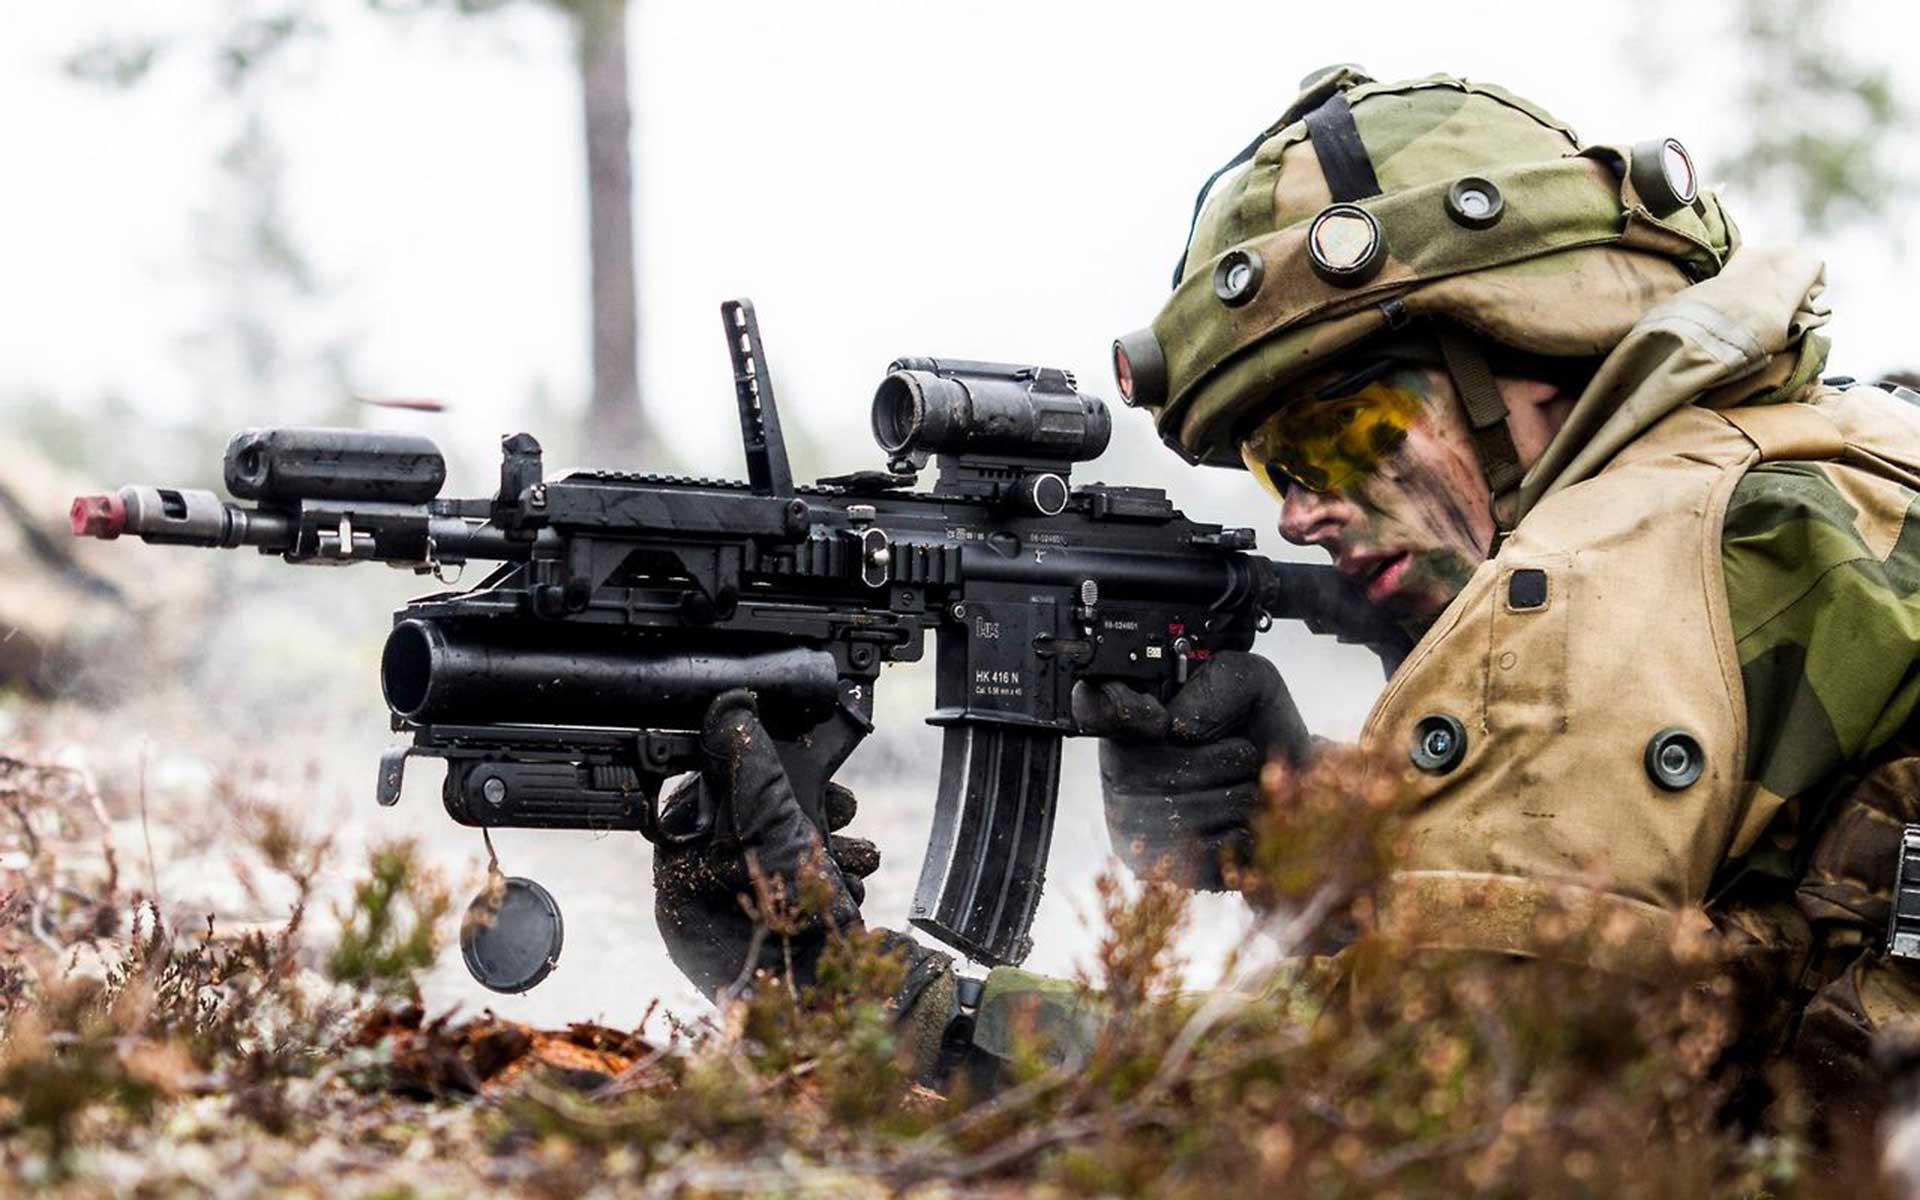 Франция выбор сделала. Немецкий HK 416 не оставил шансов российскому АК-12